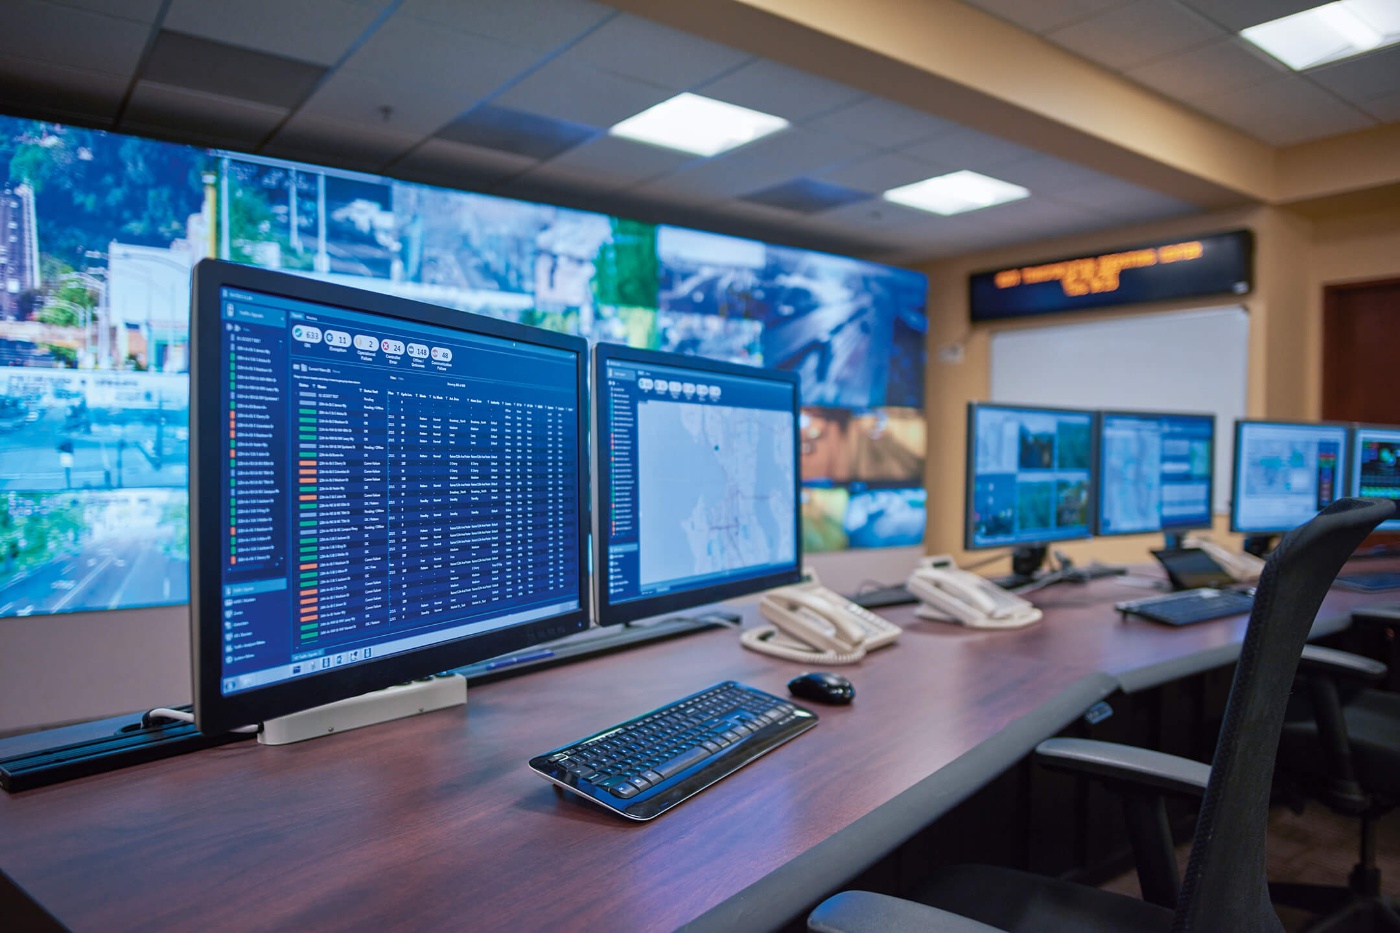 Ob intelligente Verkehrsinfrastruktur oder Energiesysteme - die digitale Steuerung der Systeme spielt eine wichtige Rolle. © Siemens 